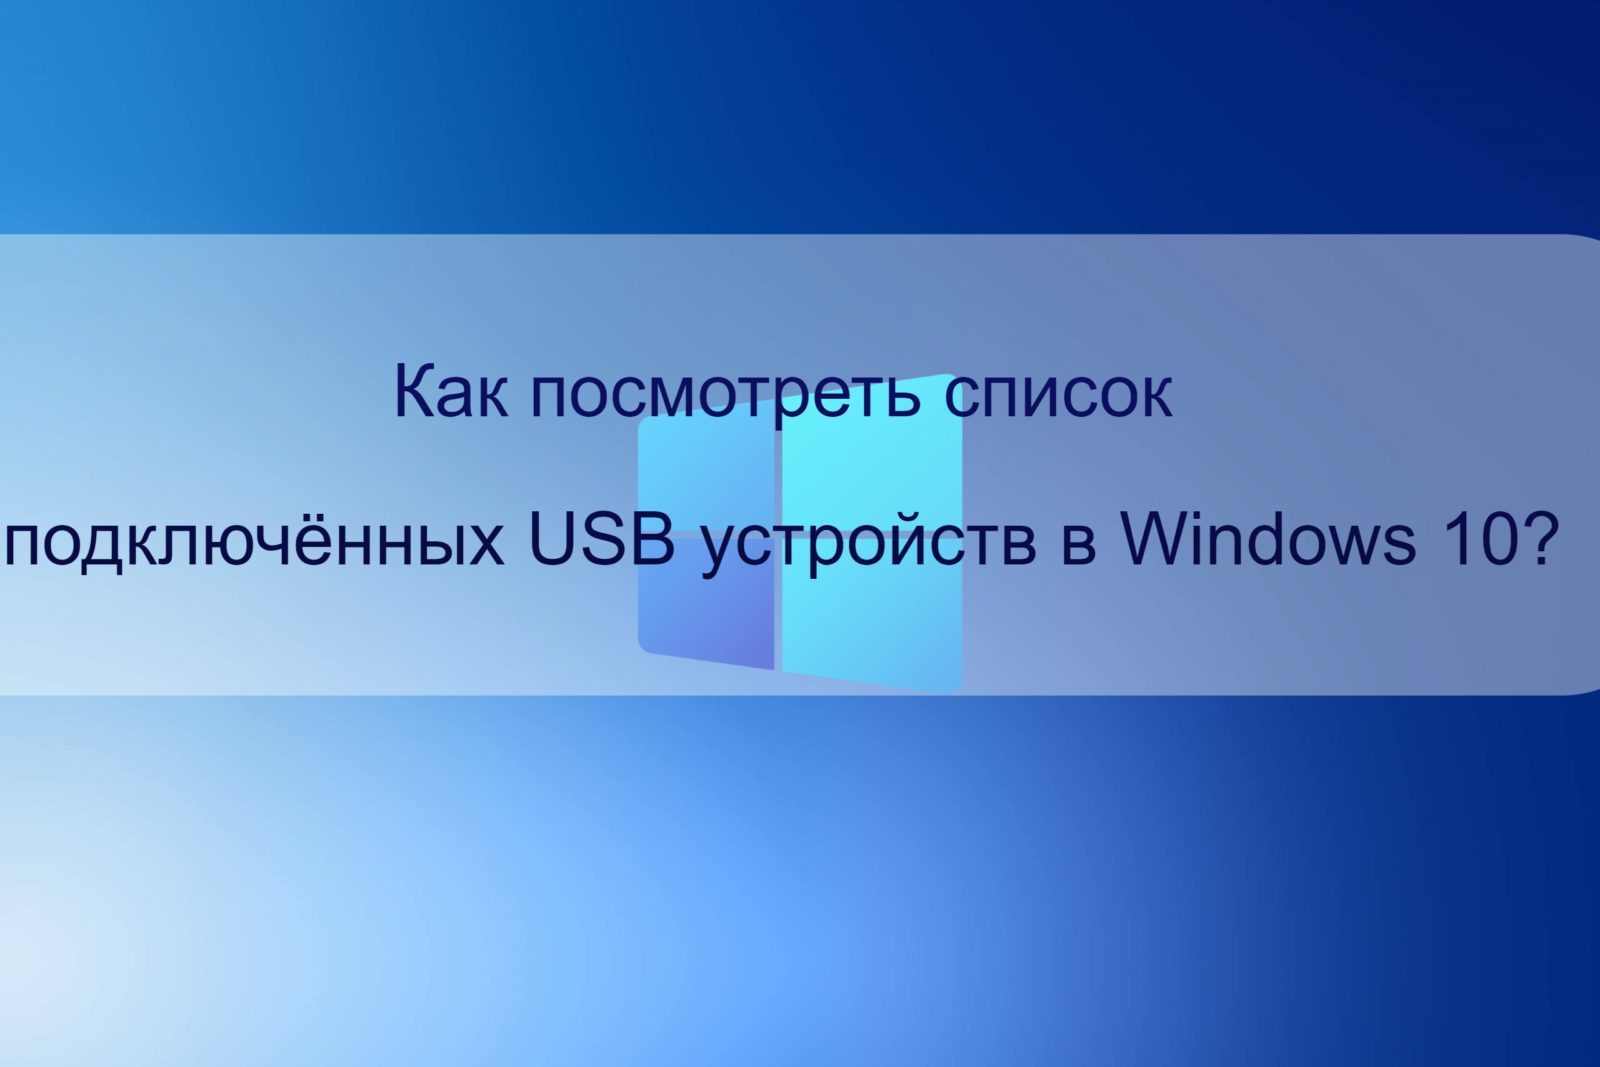 Как посмотреть список подключённых USB устройств в Windows 10?